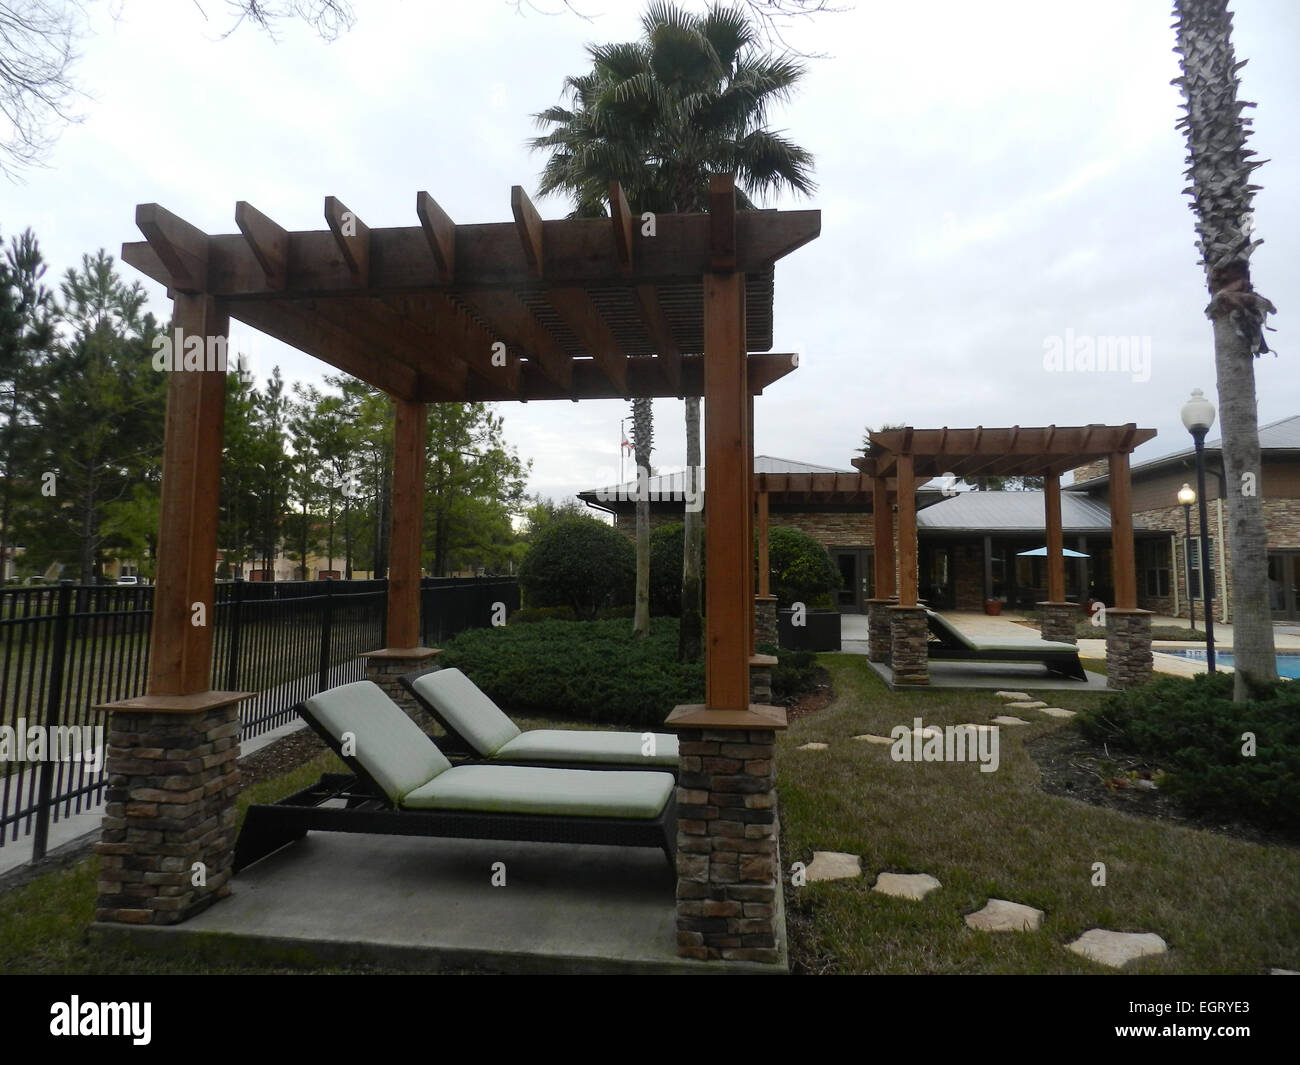 Terrazza con giardino in stile mediterraneo - Ambiente in stile condominio in Florida Foto Stock